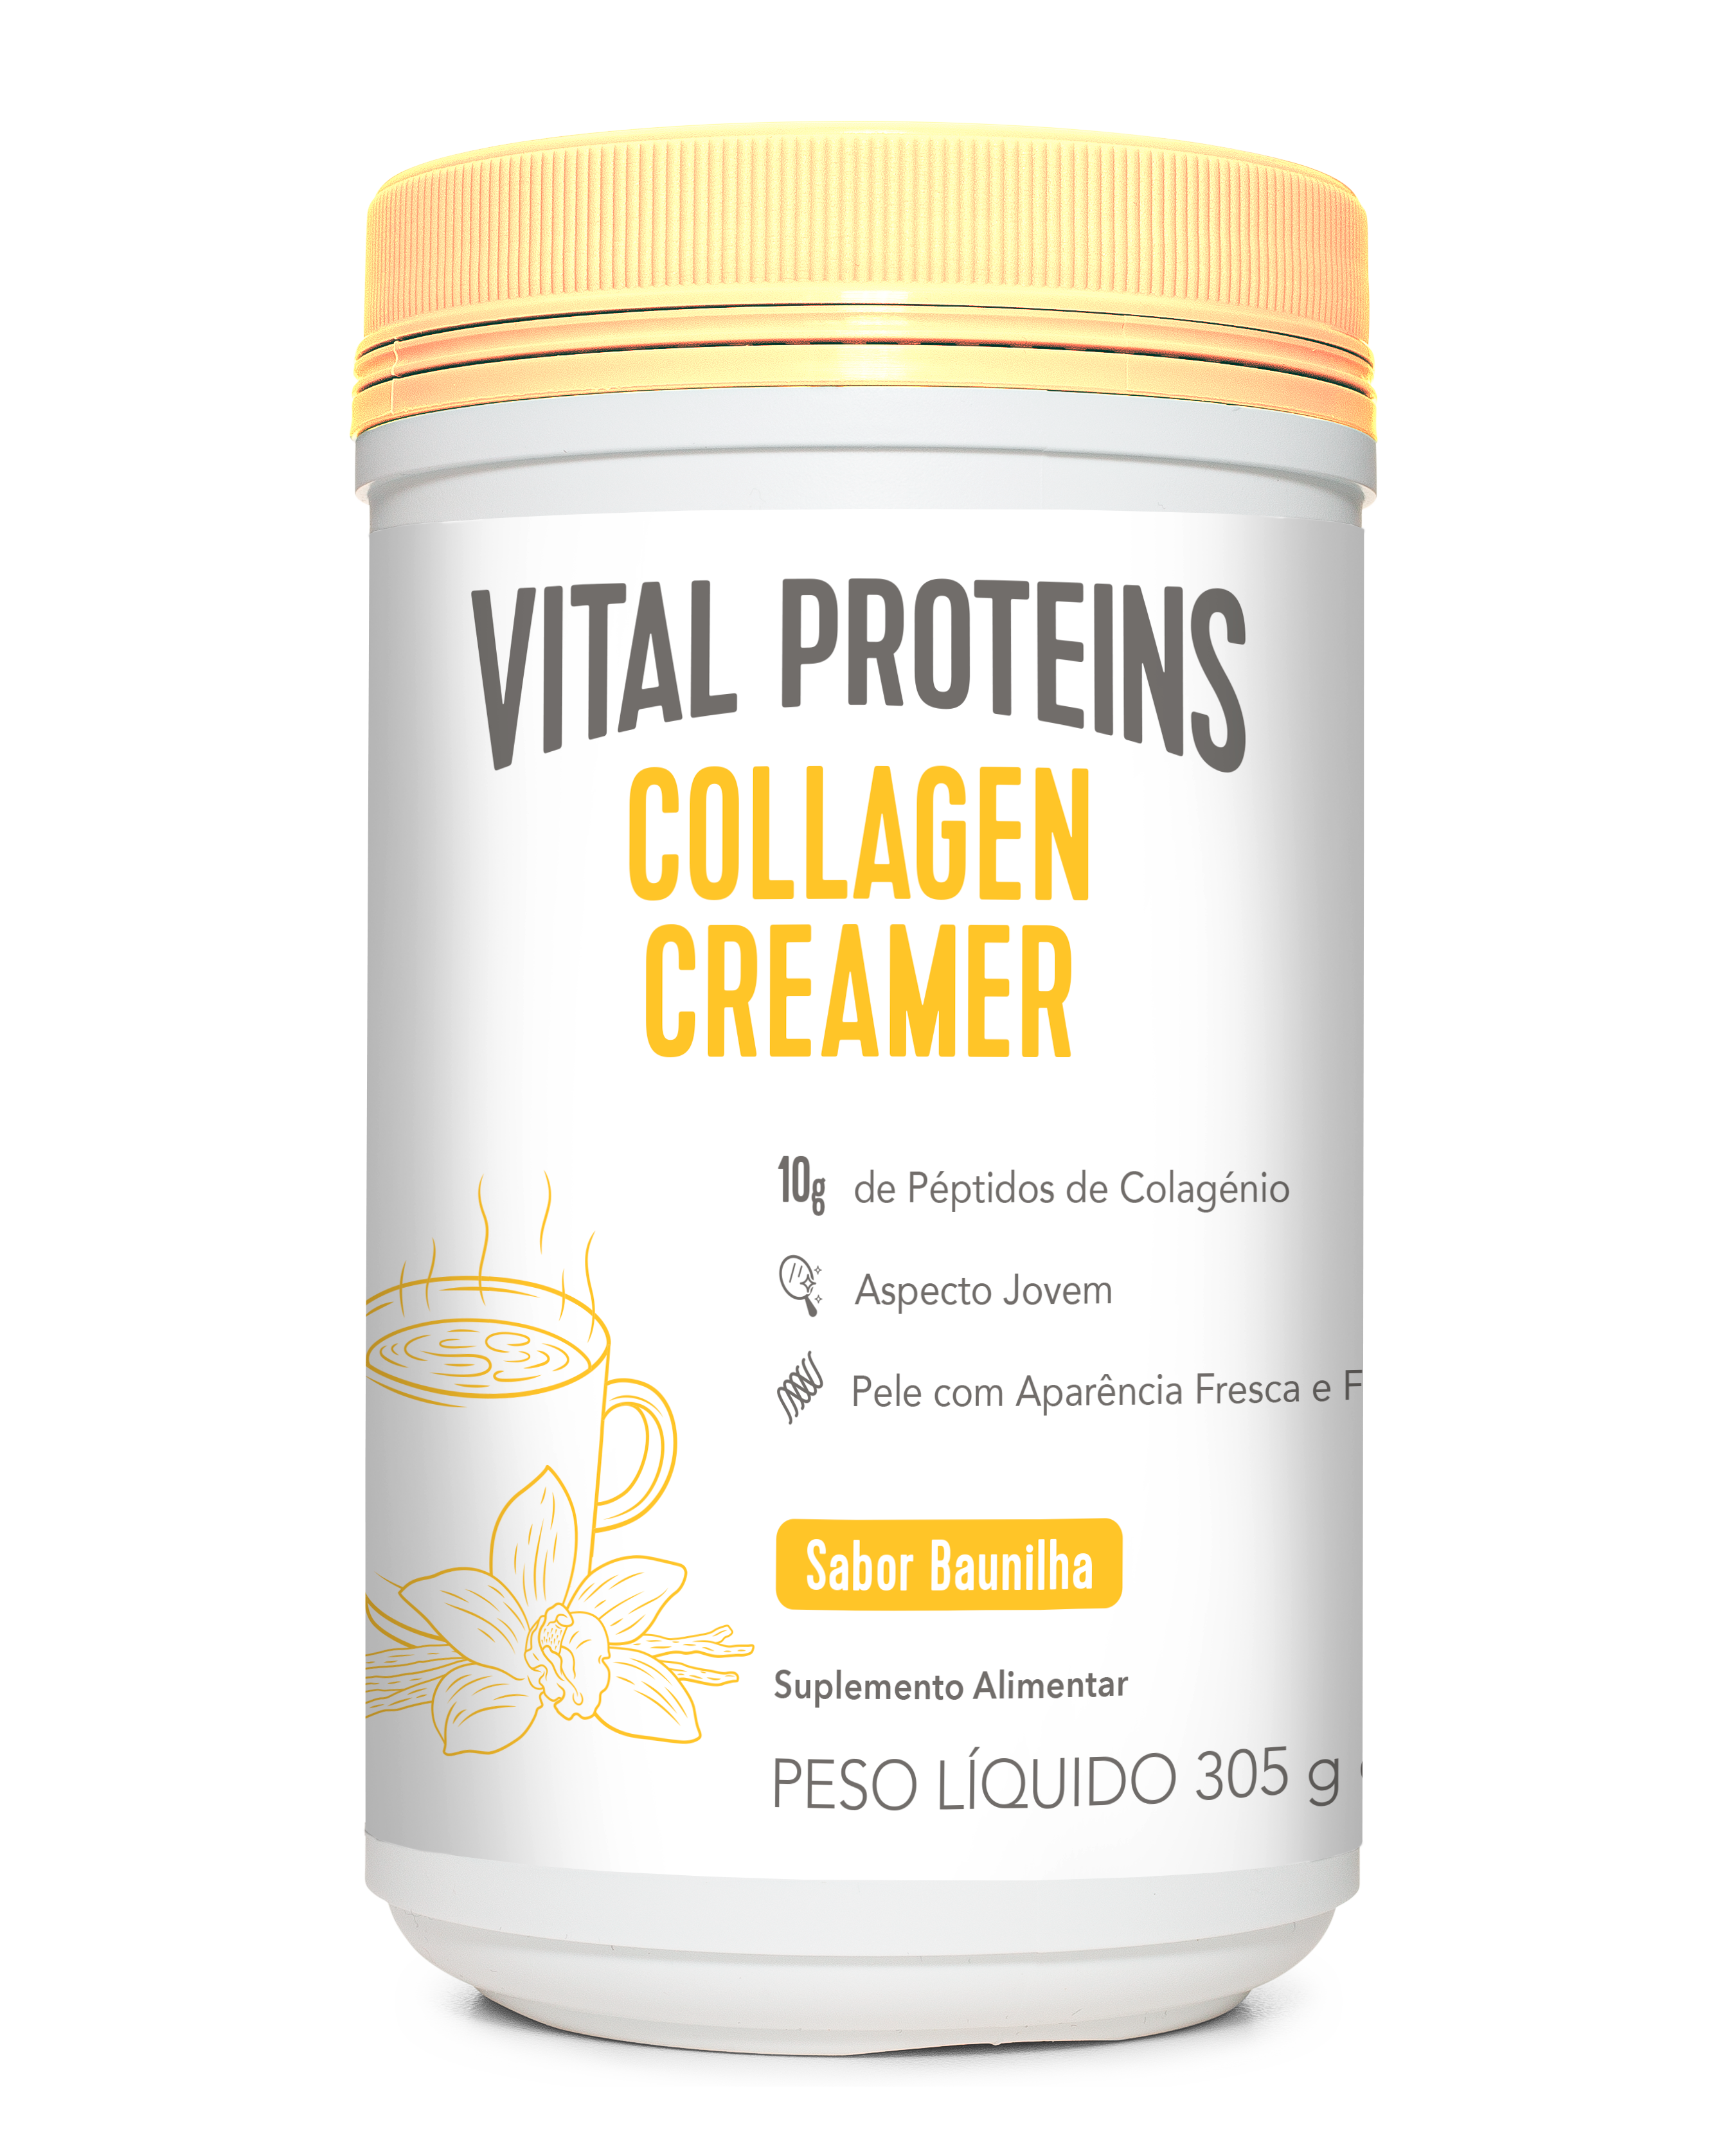 Vital Proteins Collagen Creamer Bauinlha